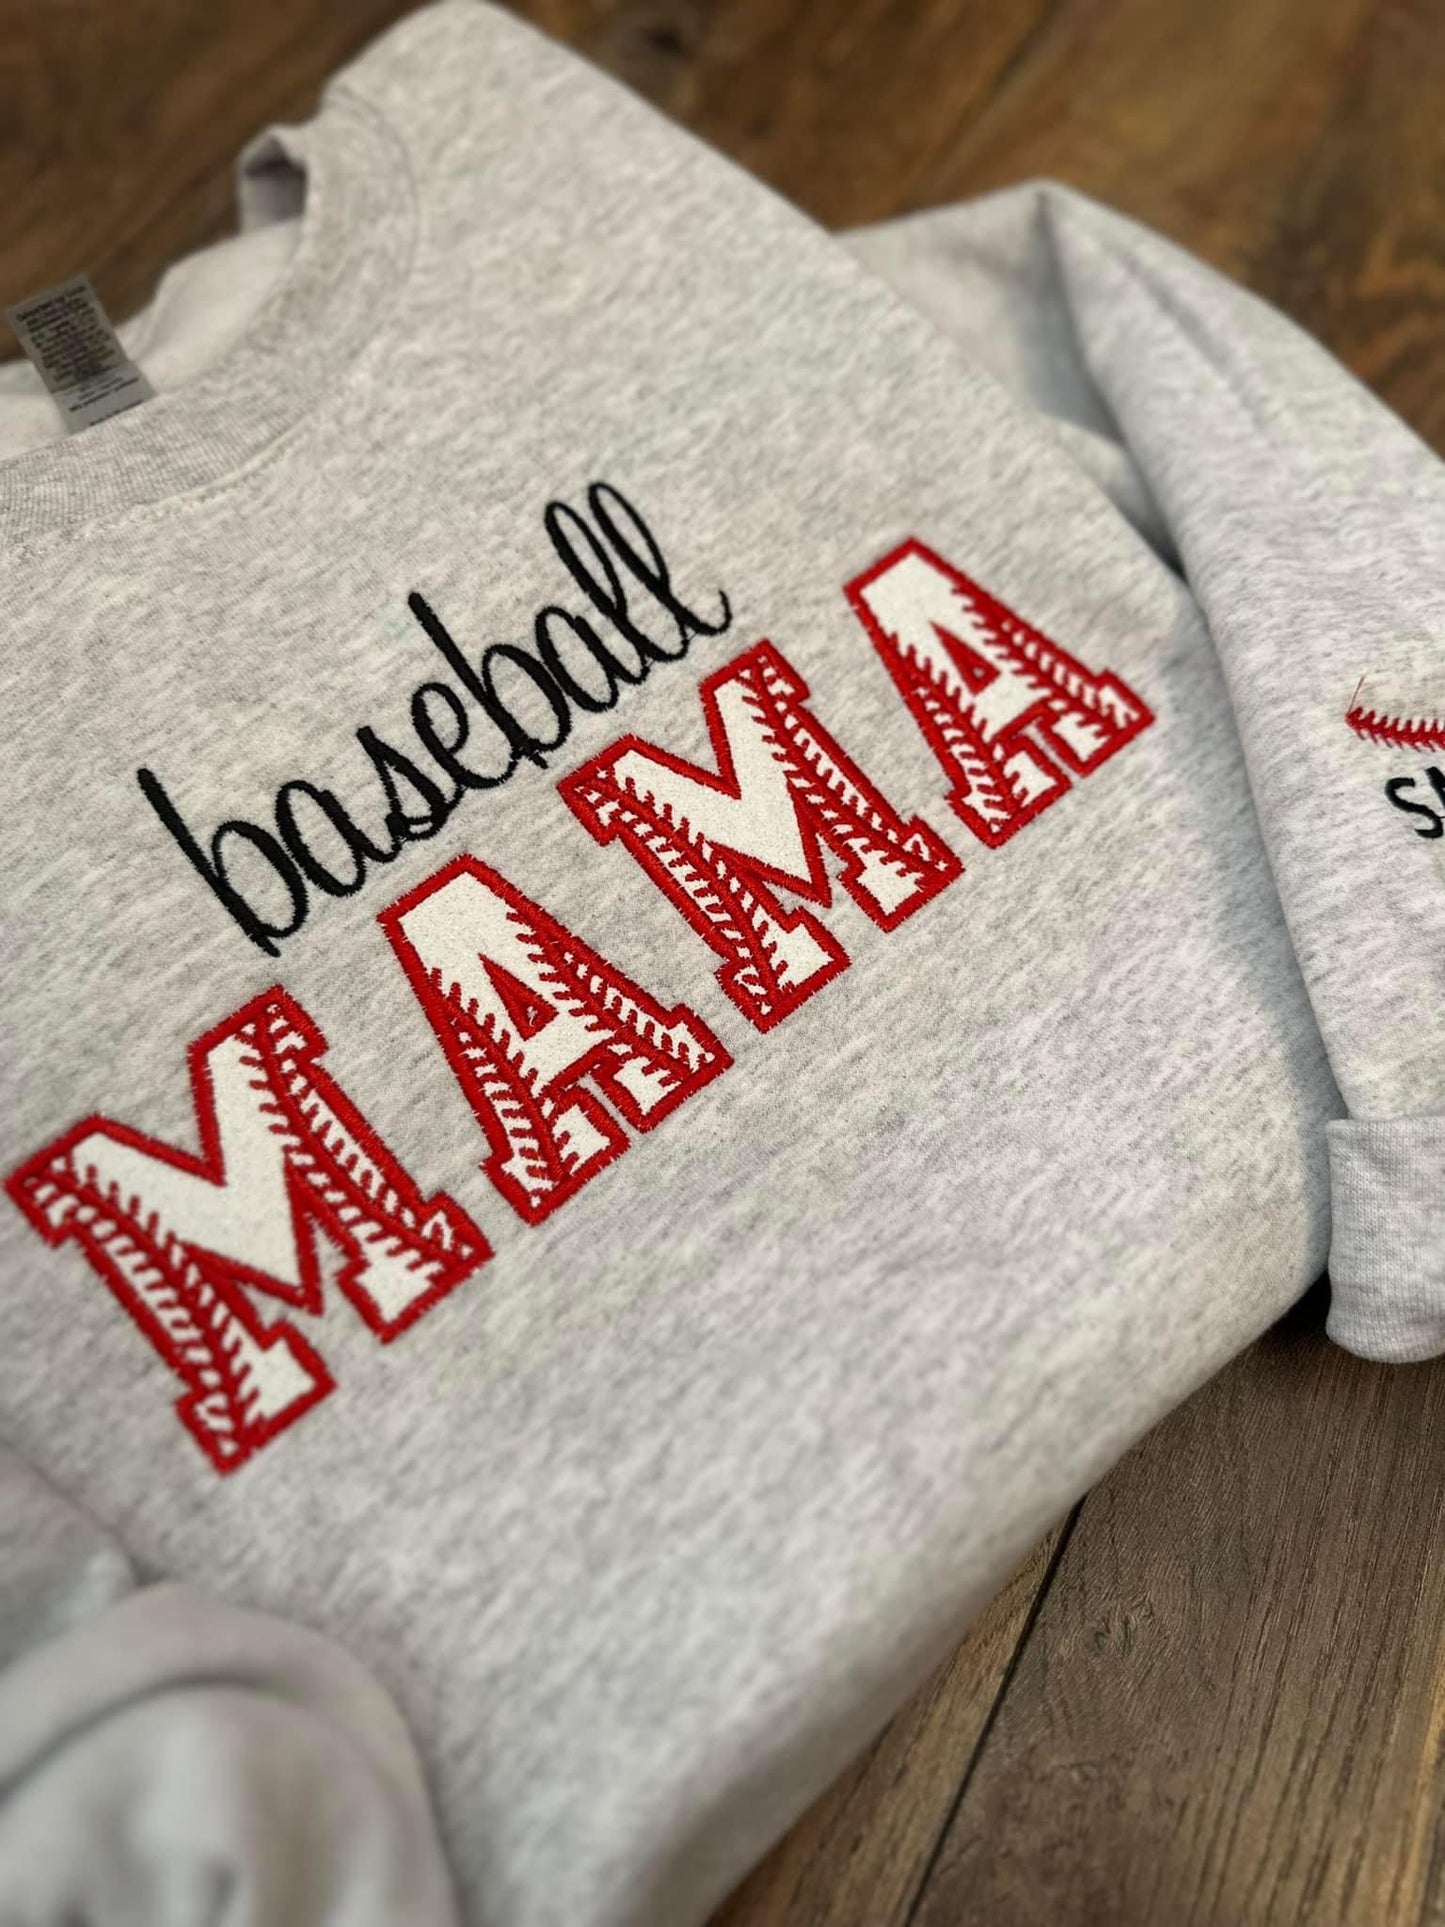 Baseball / Softball / T-Ball Mama Embroidered Sweatshirts - PRE ORDER